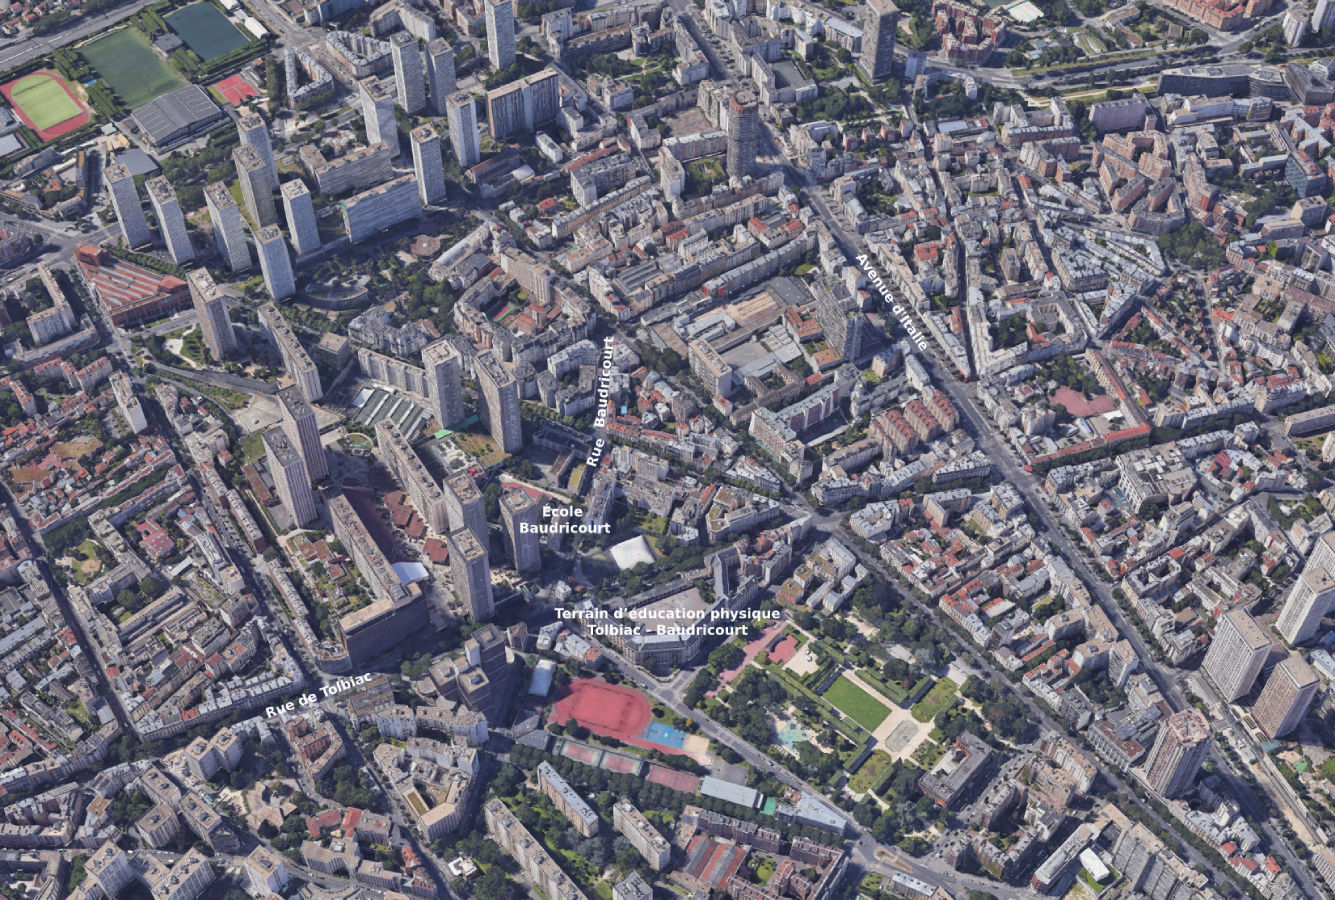 Vue aérienne du quartier des travaux de prolongement au sud de la ligne 14 dans le 13e arrondissement, pointant les emplacements de l'école Baudricourt et du terrain d'éducation physique Tolbiac - Baudricourt